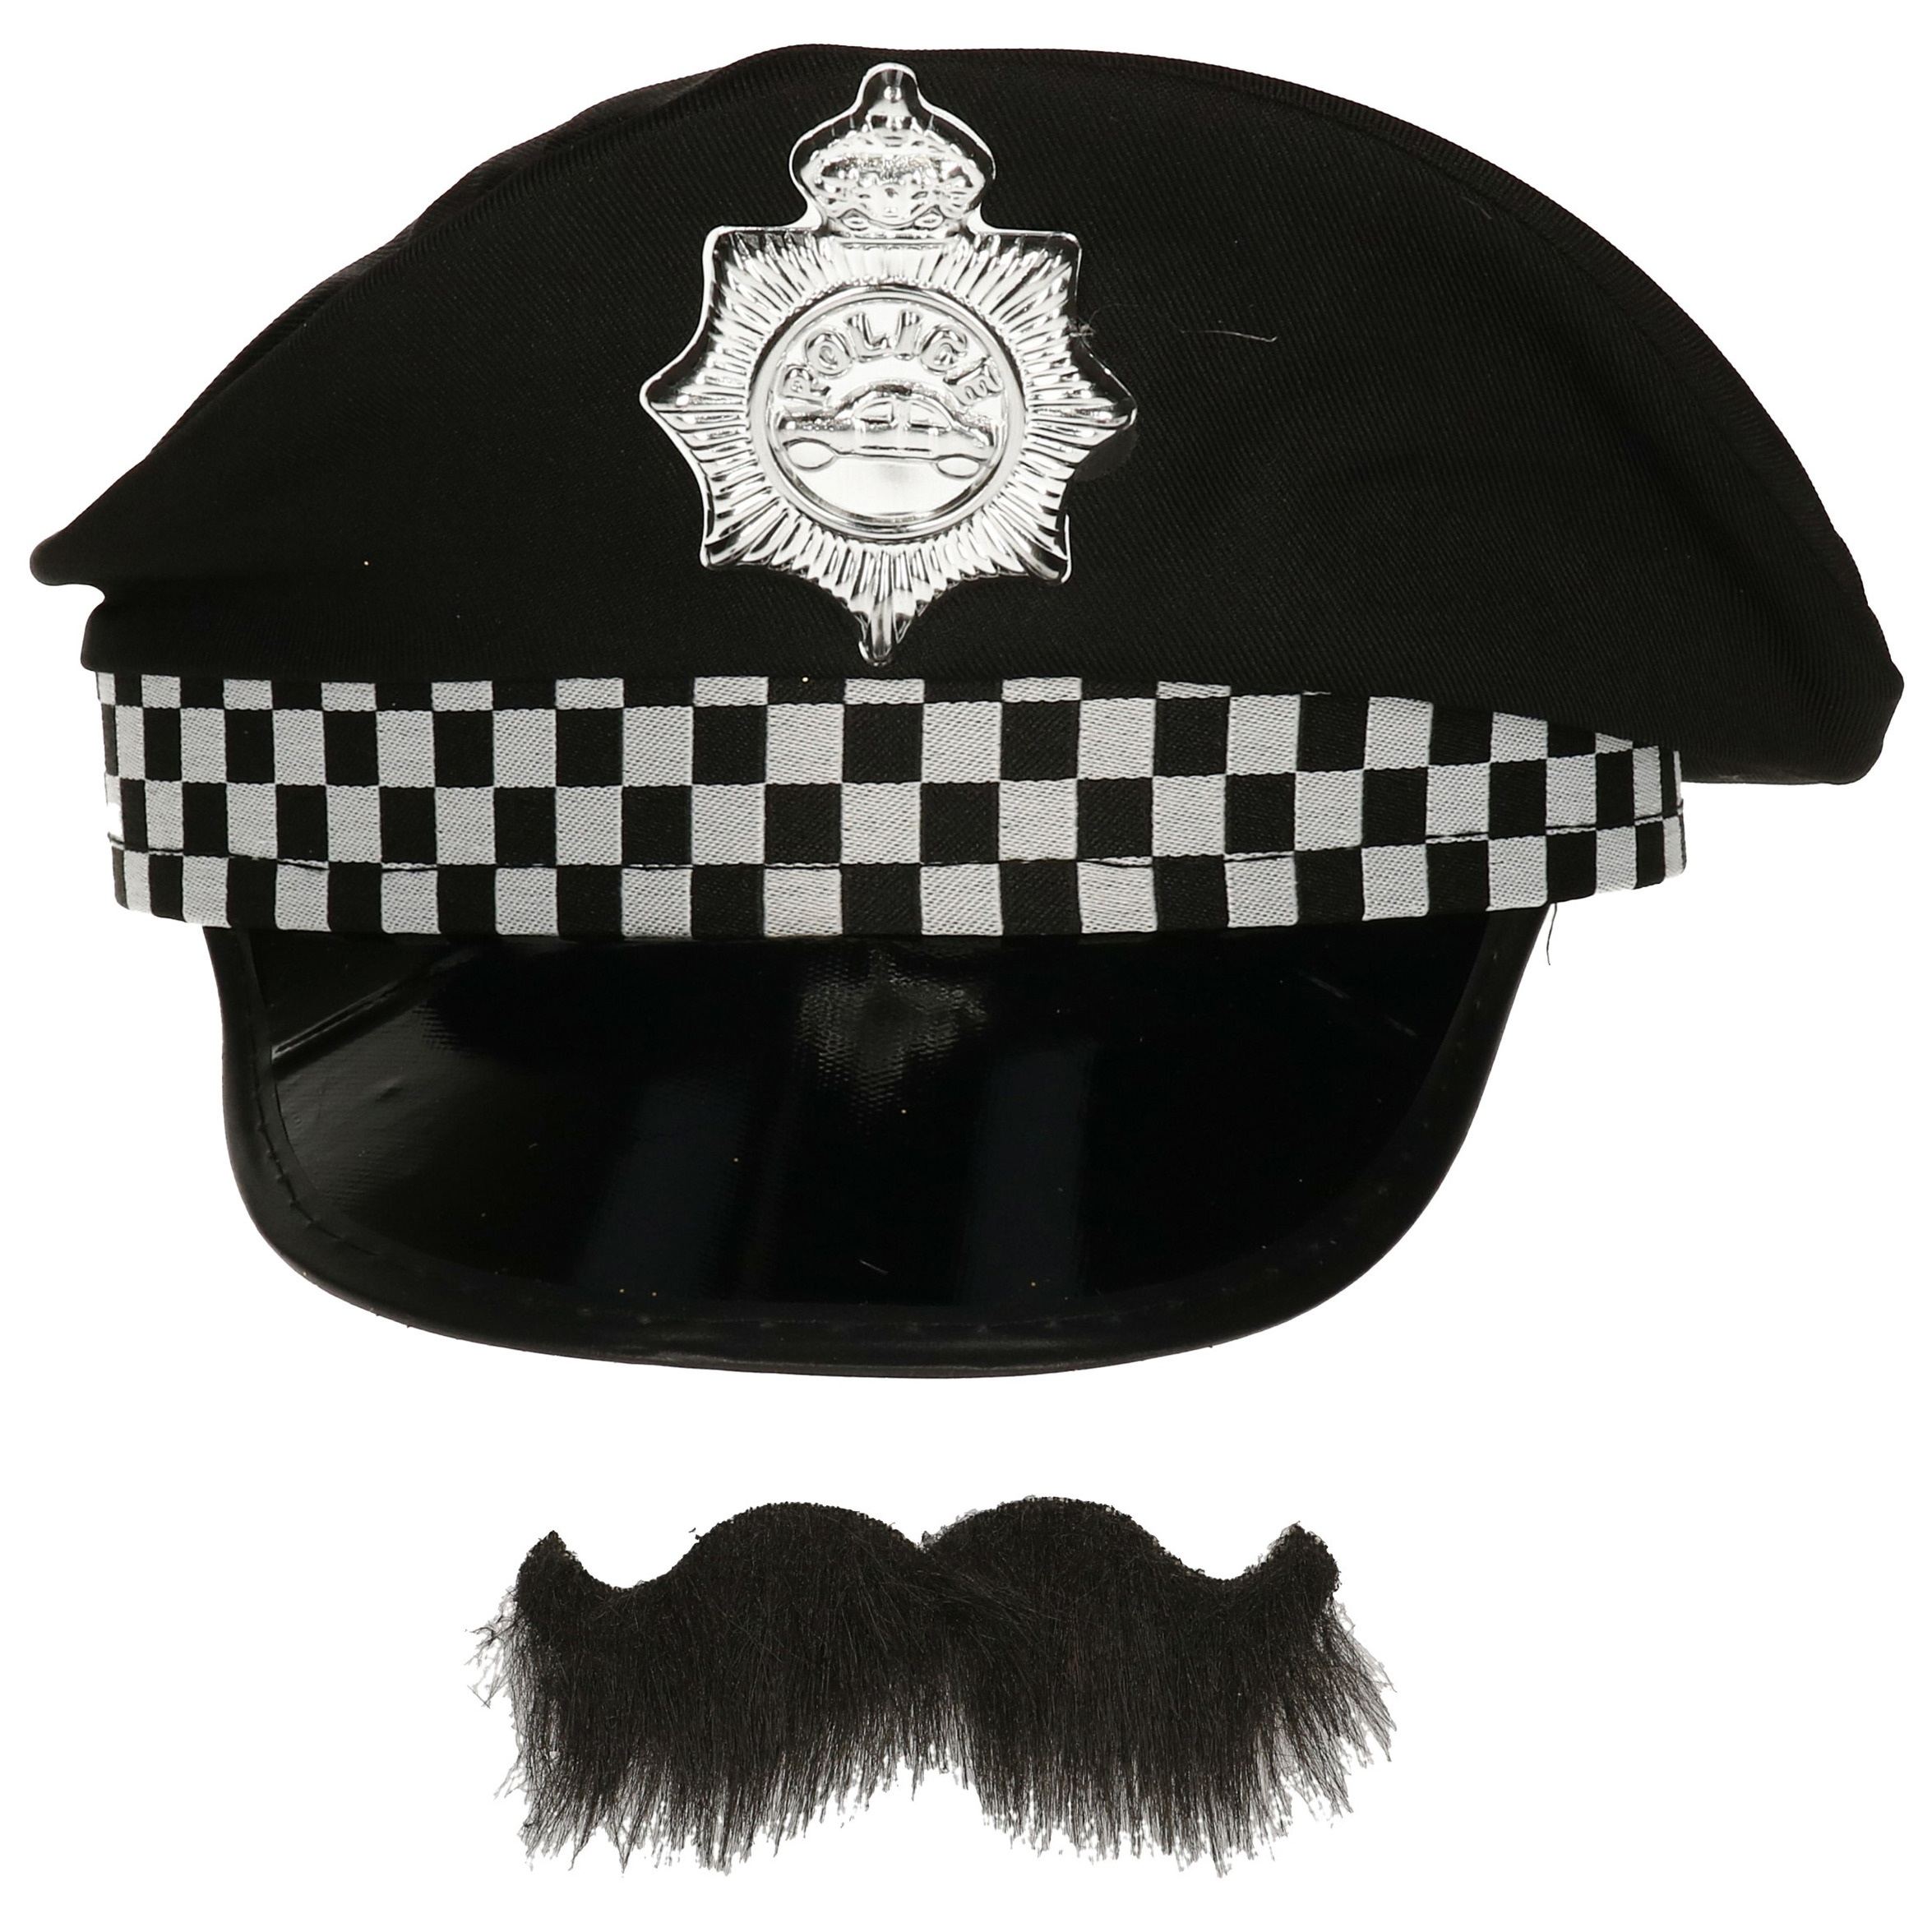 Carnaval verkleed politiepet met politie thema plaksnor zwart heren verkleedkleding